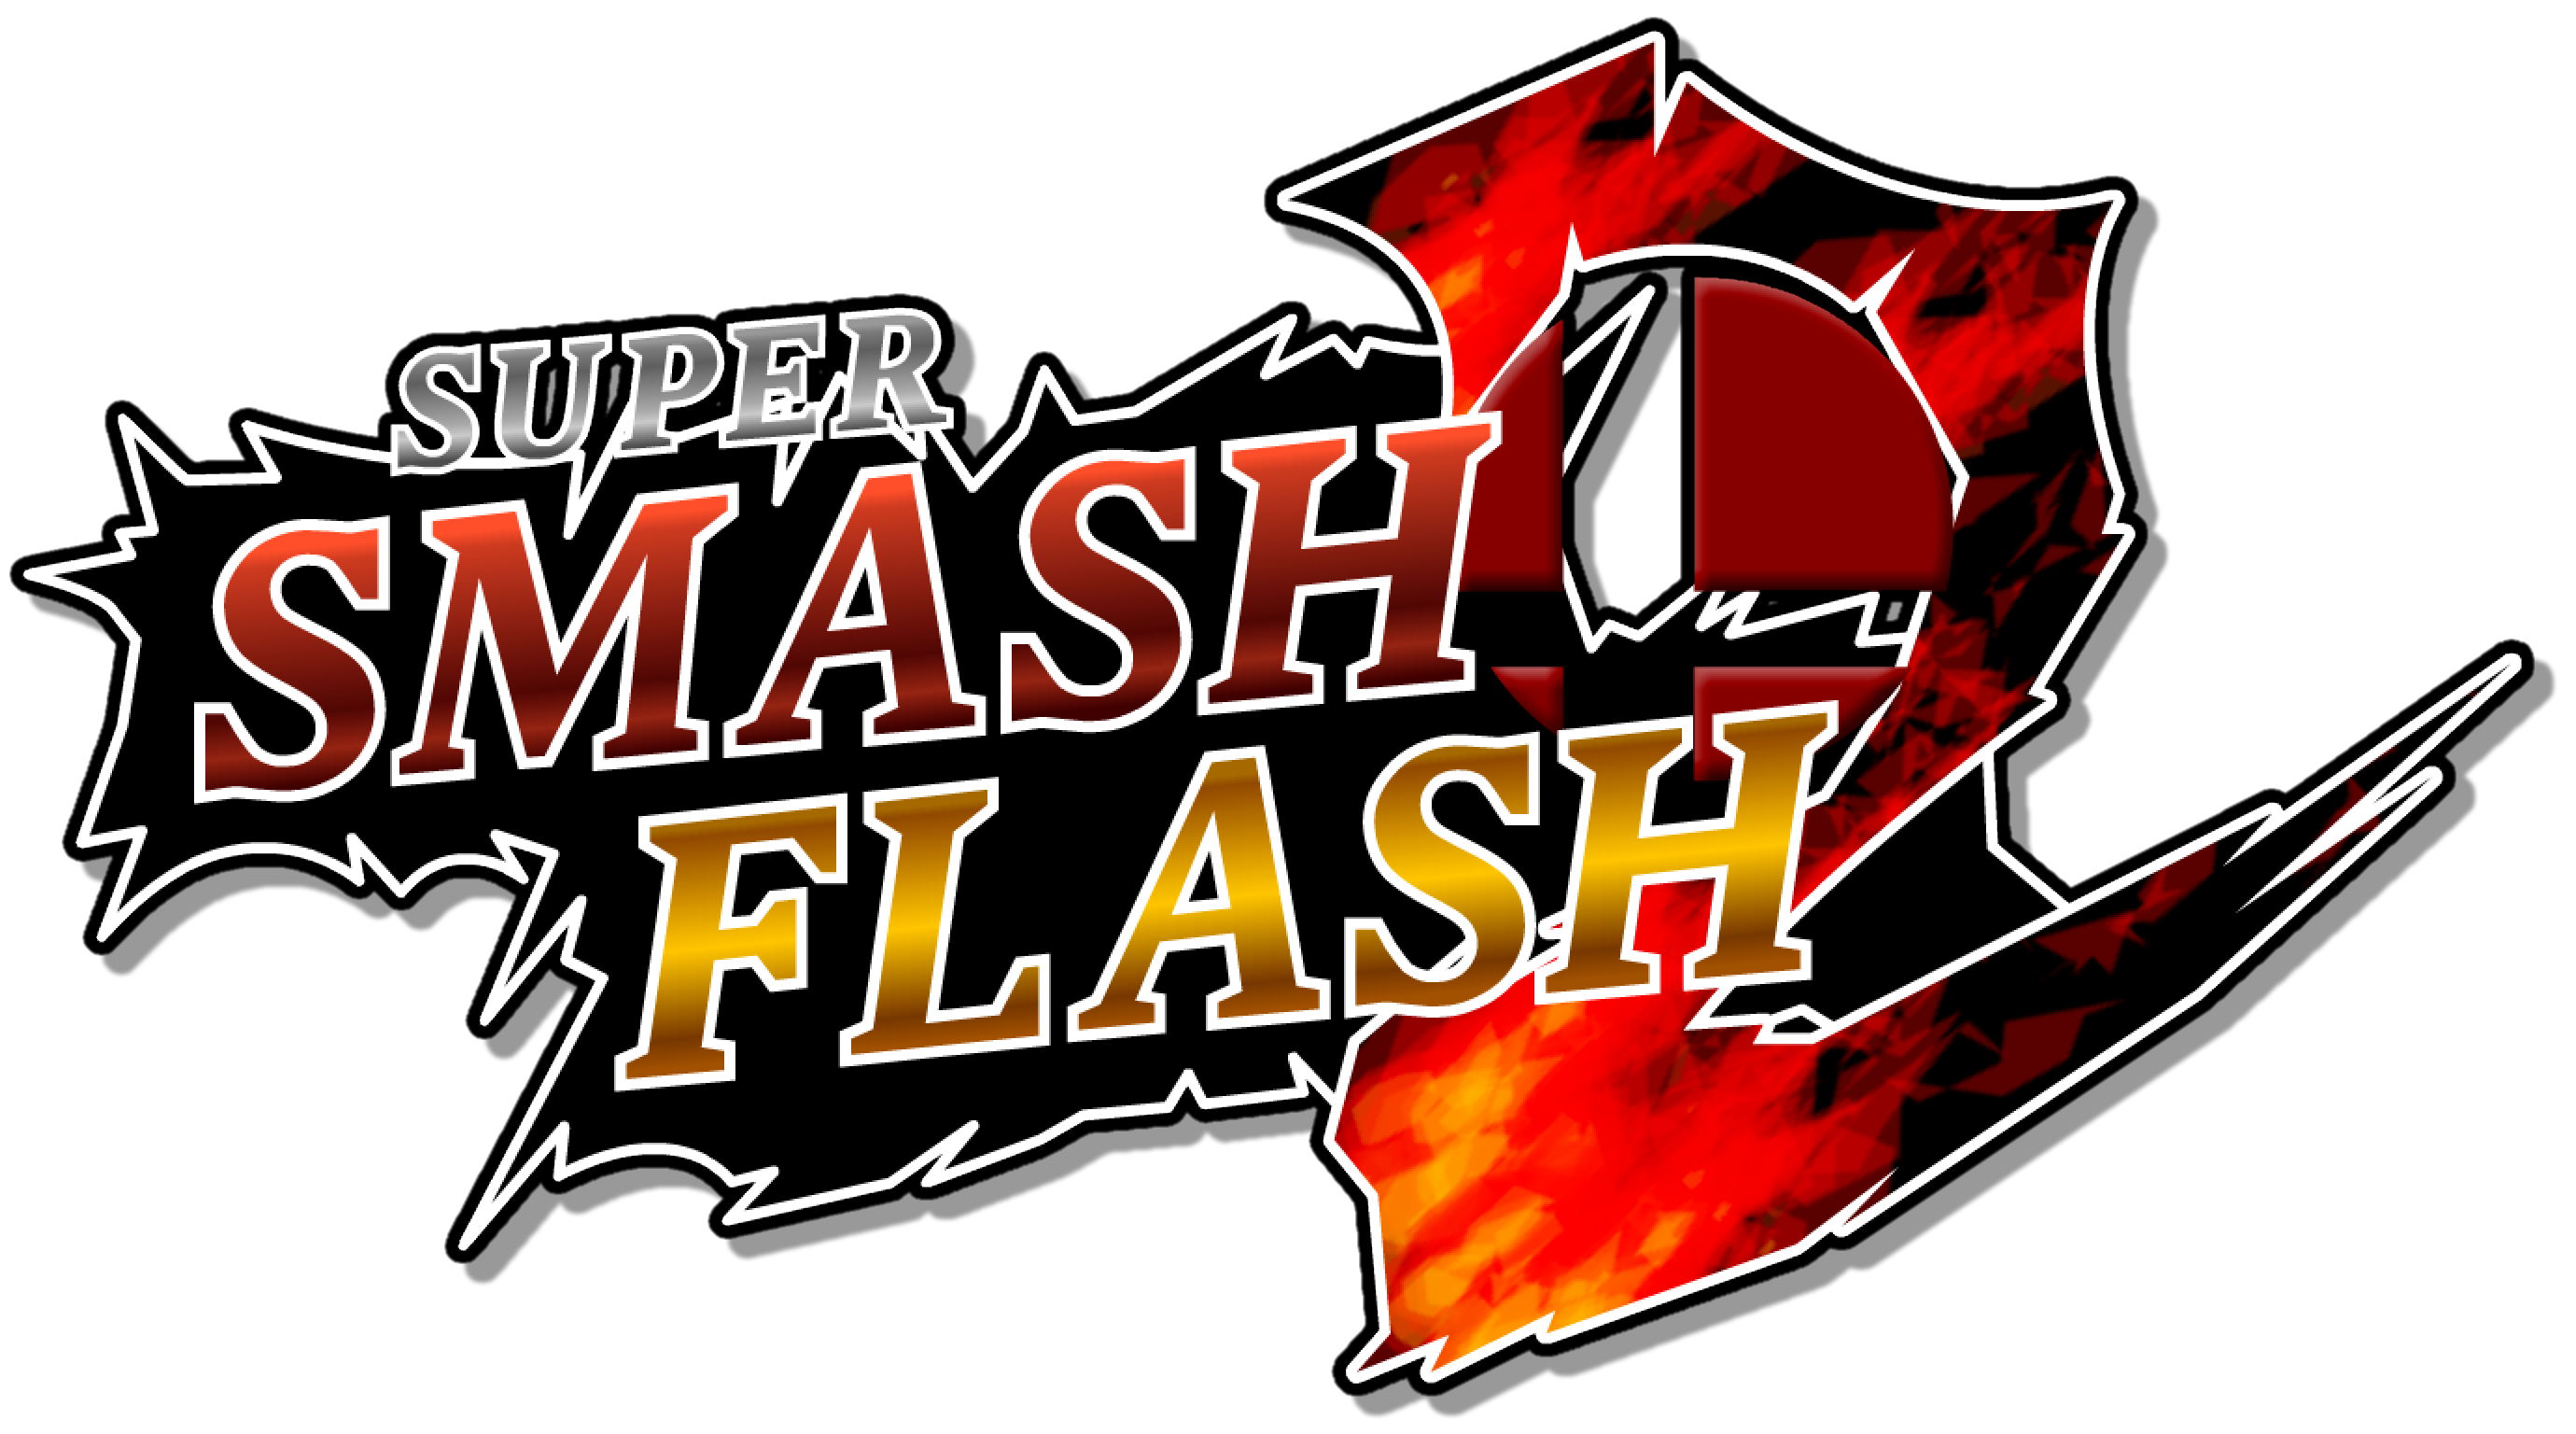 super smash flash 3 no click jogos